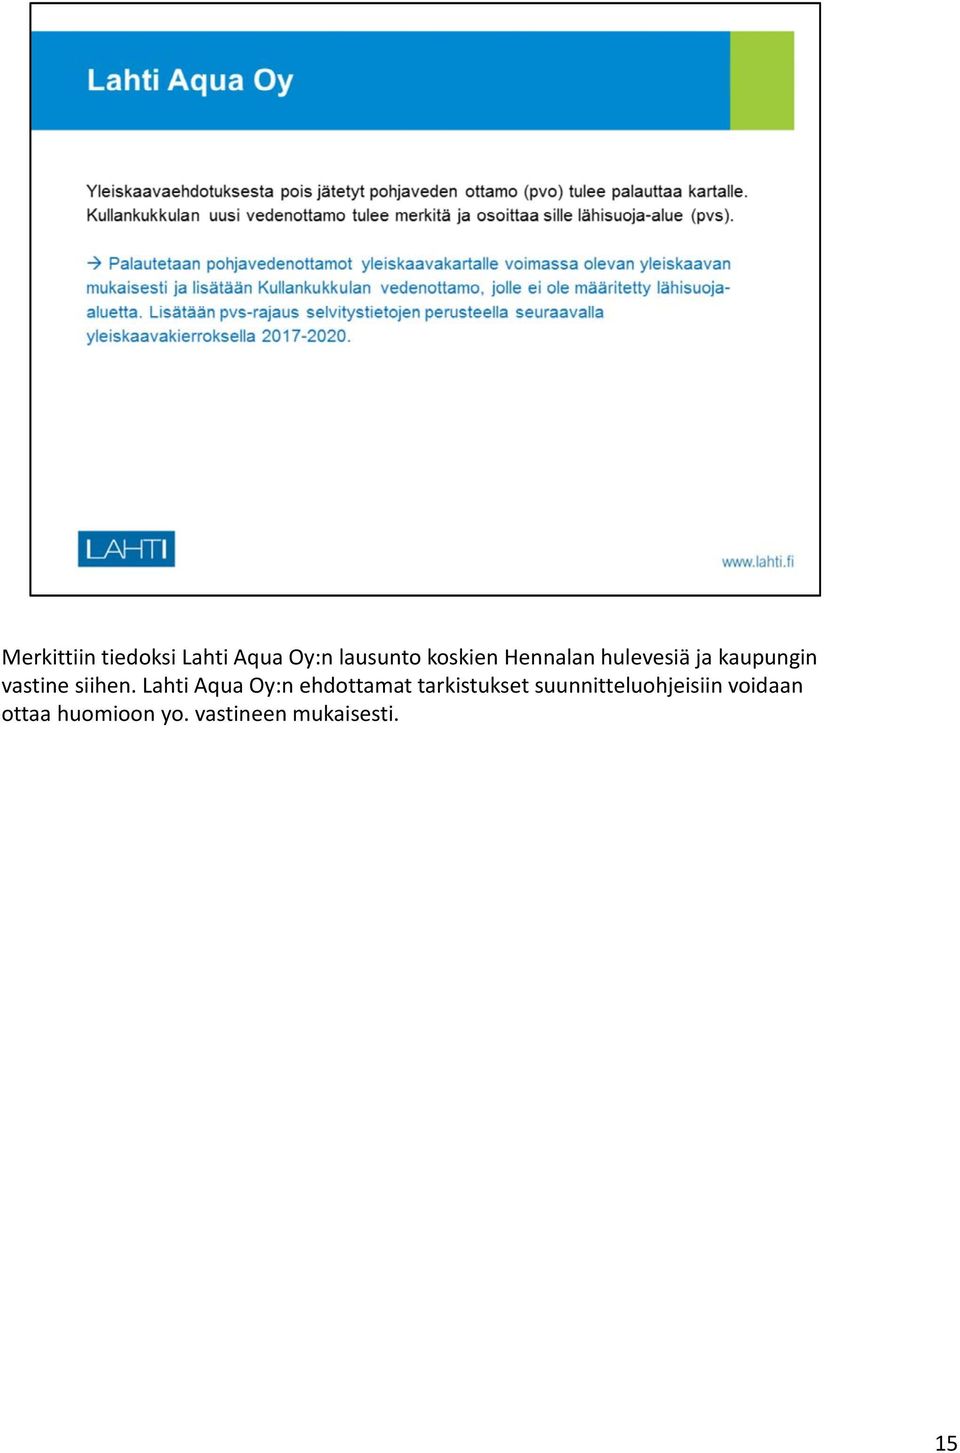 Lahti Aqua Oy:n ehdottamat tarkistukset